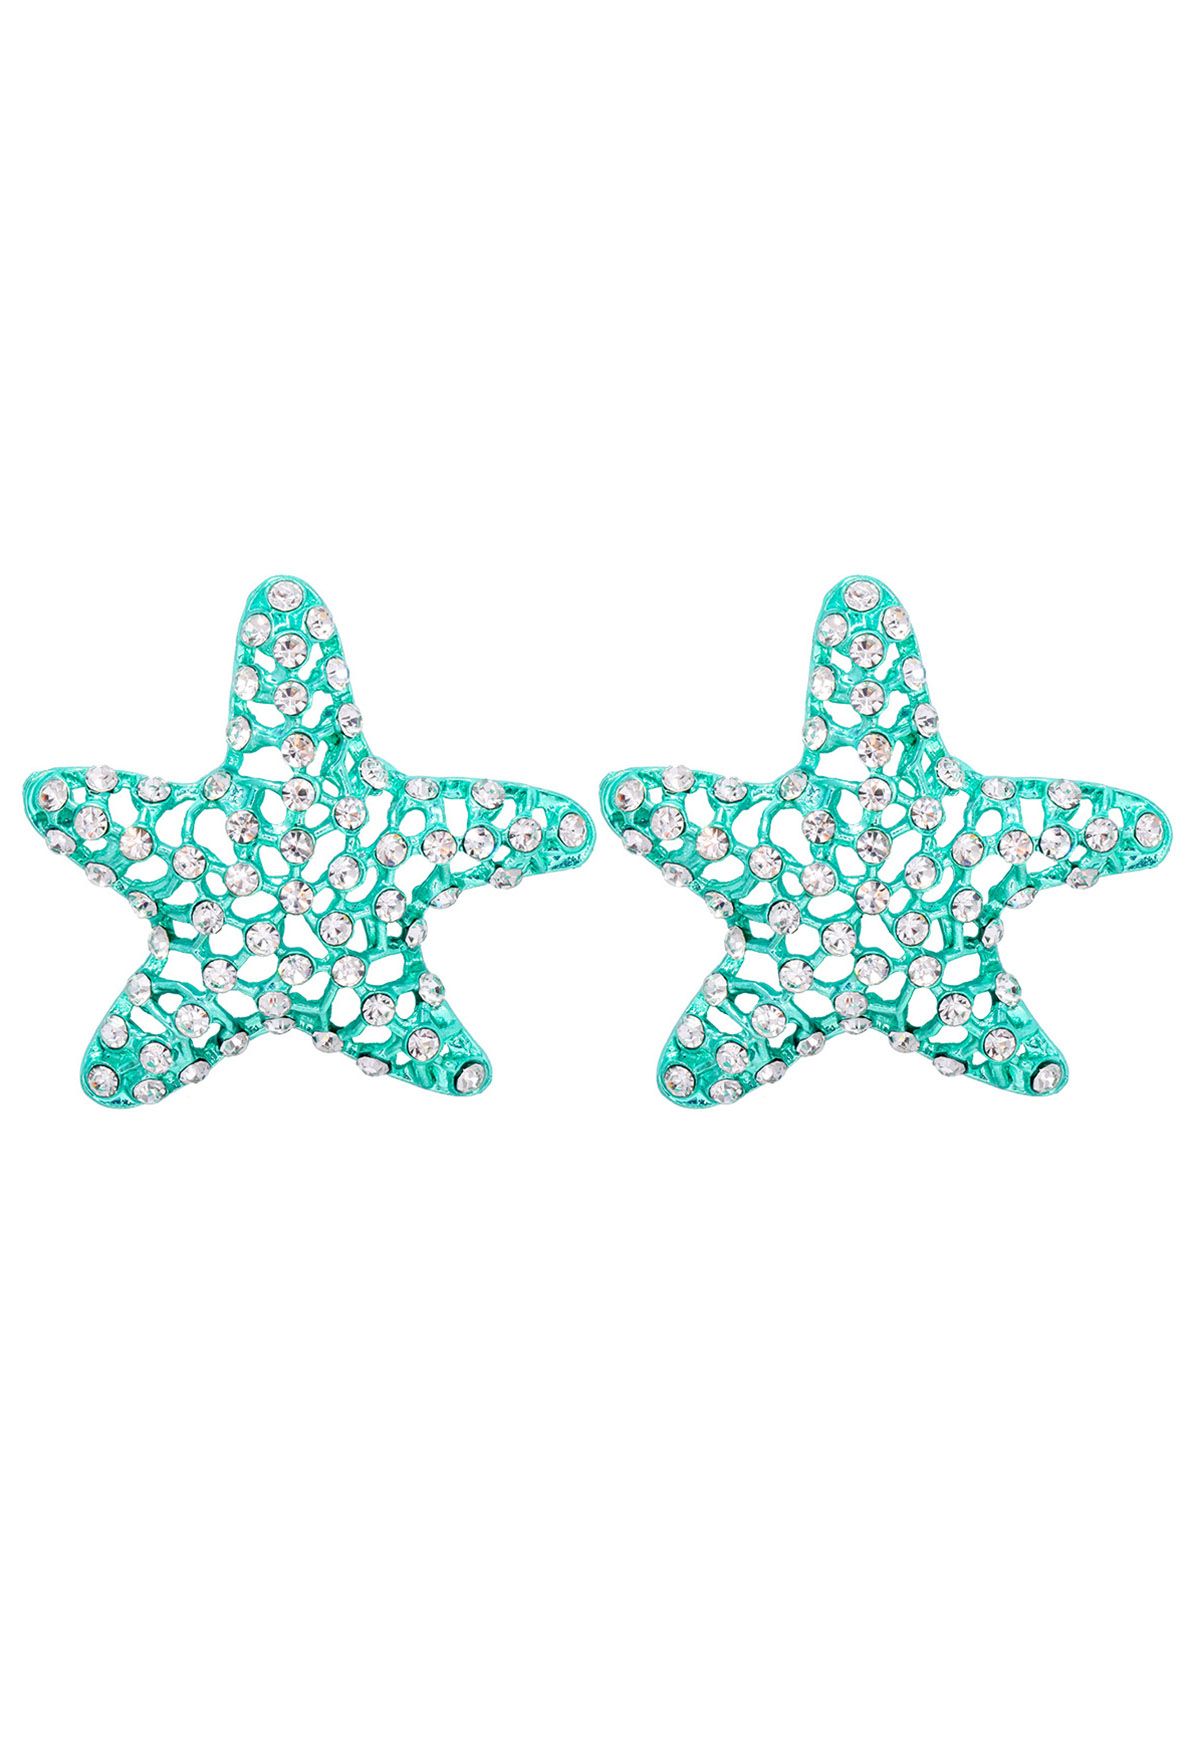 Aretes de estrella de mar con circonitas huecas en menta